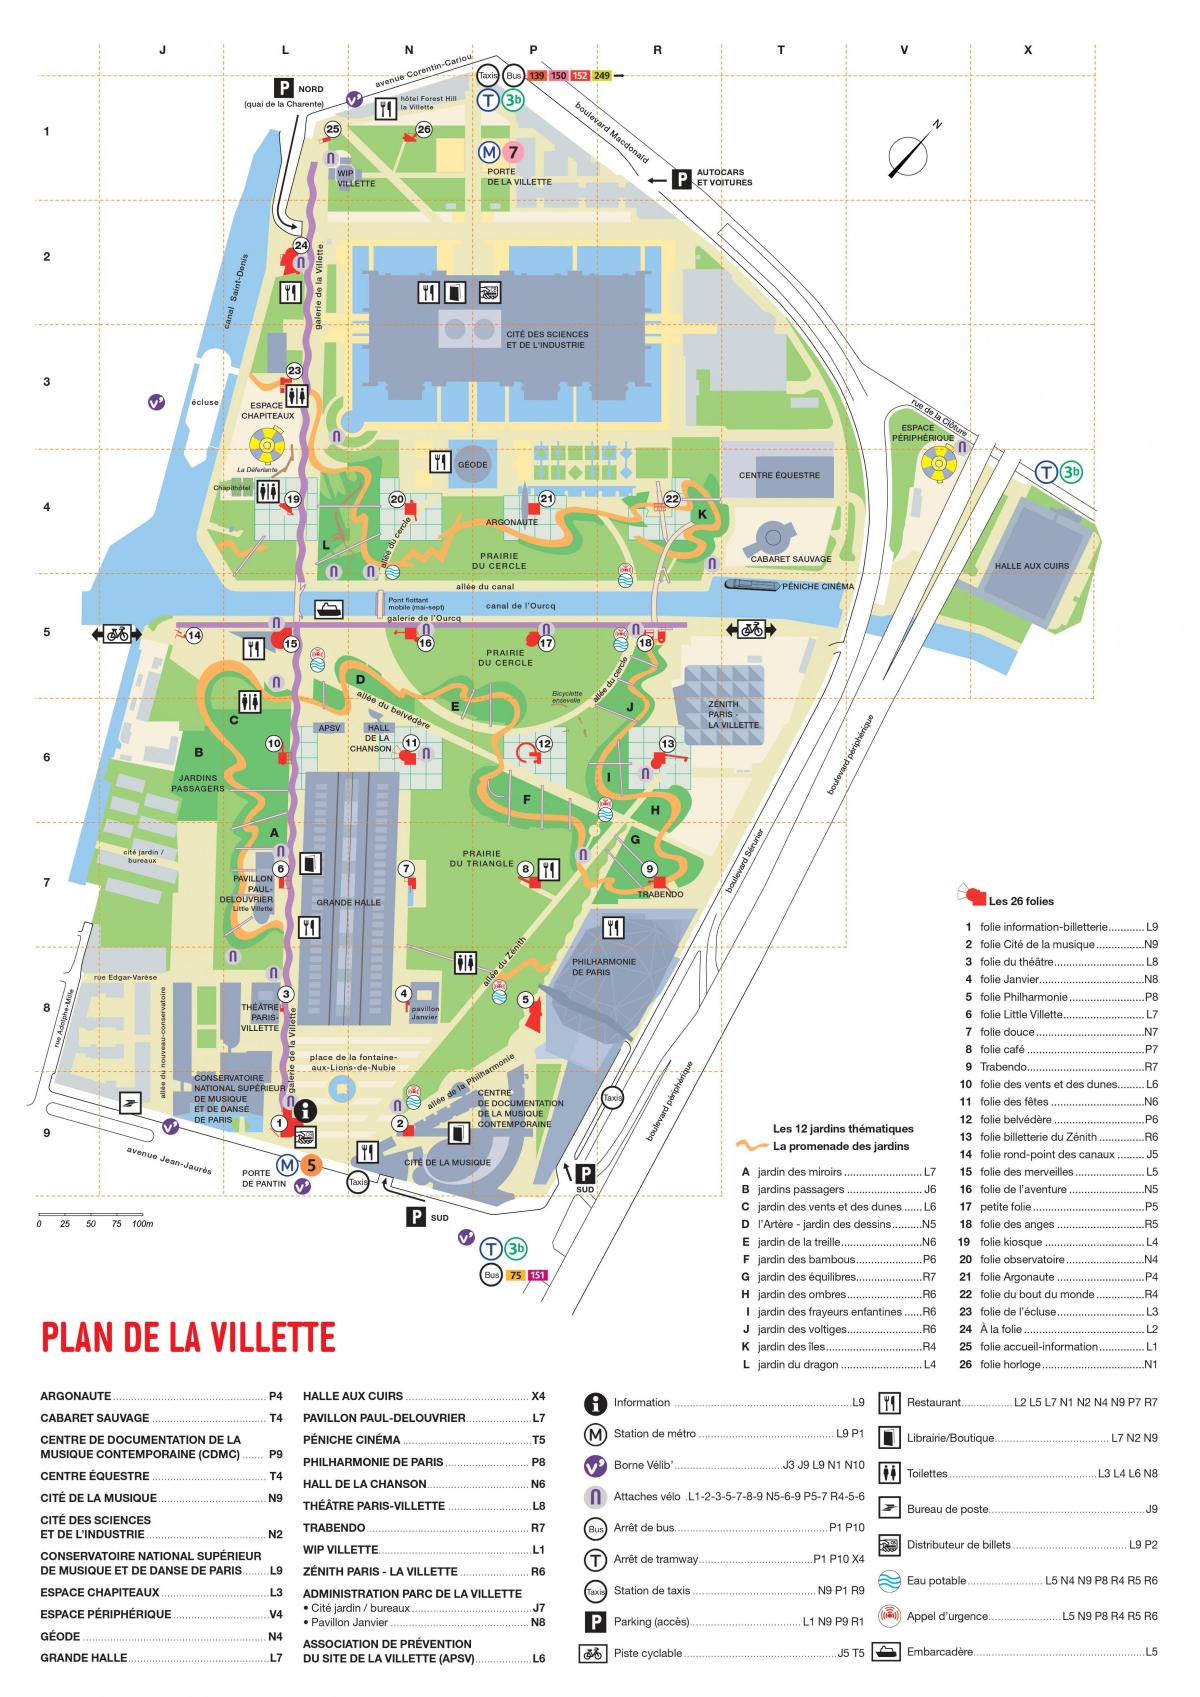 Kart over Parc de la Villette